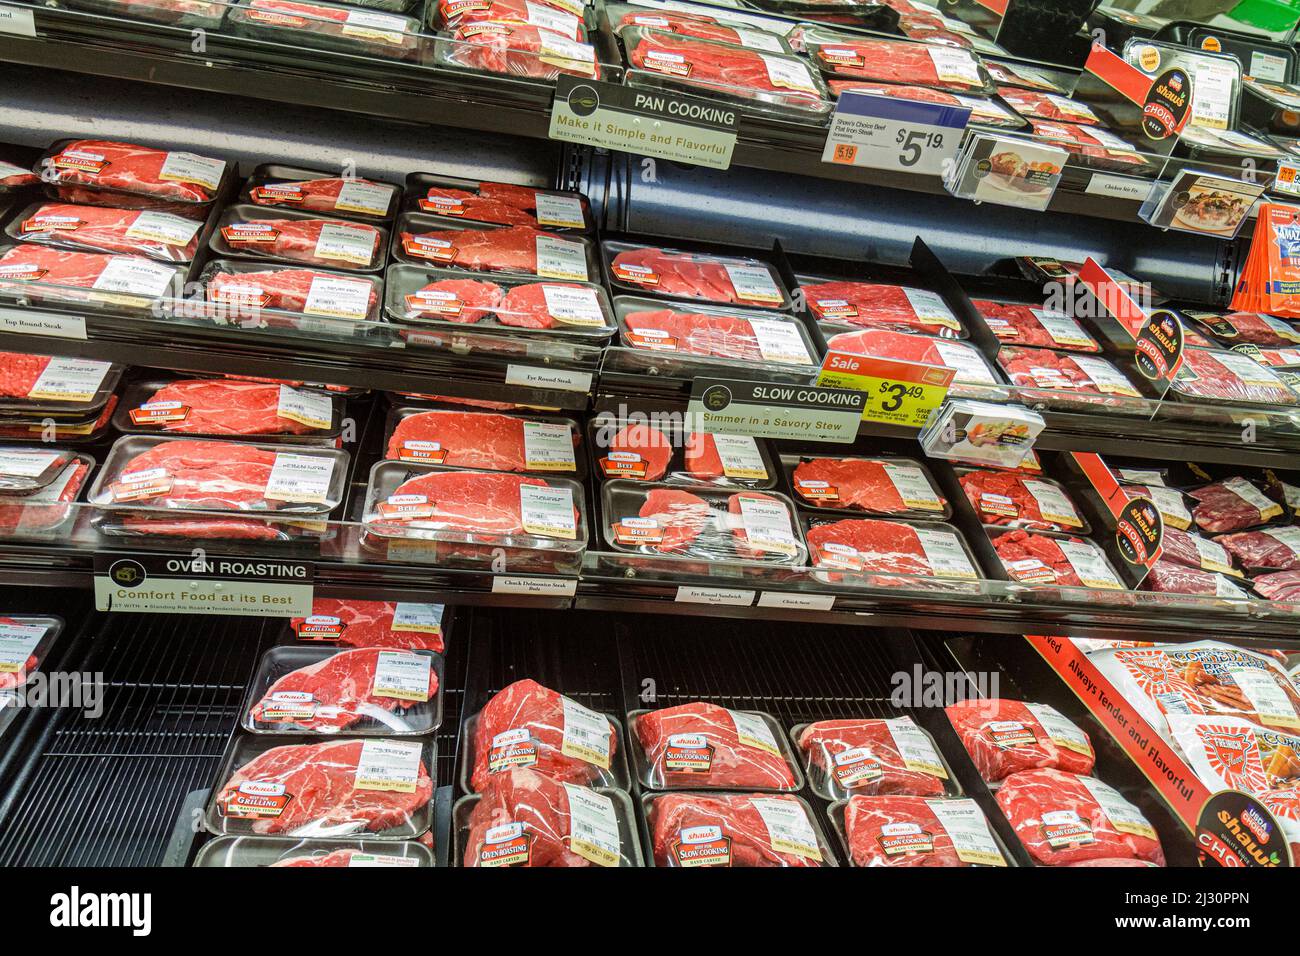 Portland Maine, Scarborough, Shaw's, negozio di alimentari, supermercato, carne rossa di manzo vetrina refrigerata Foto Stock